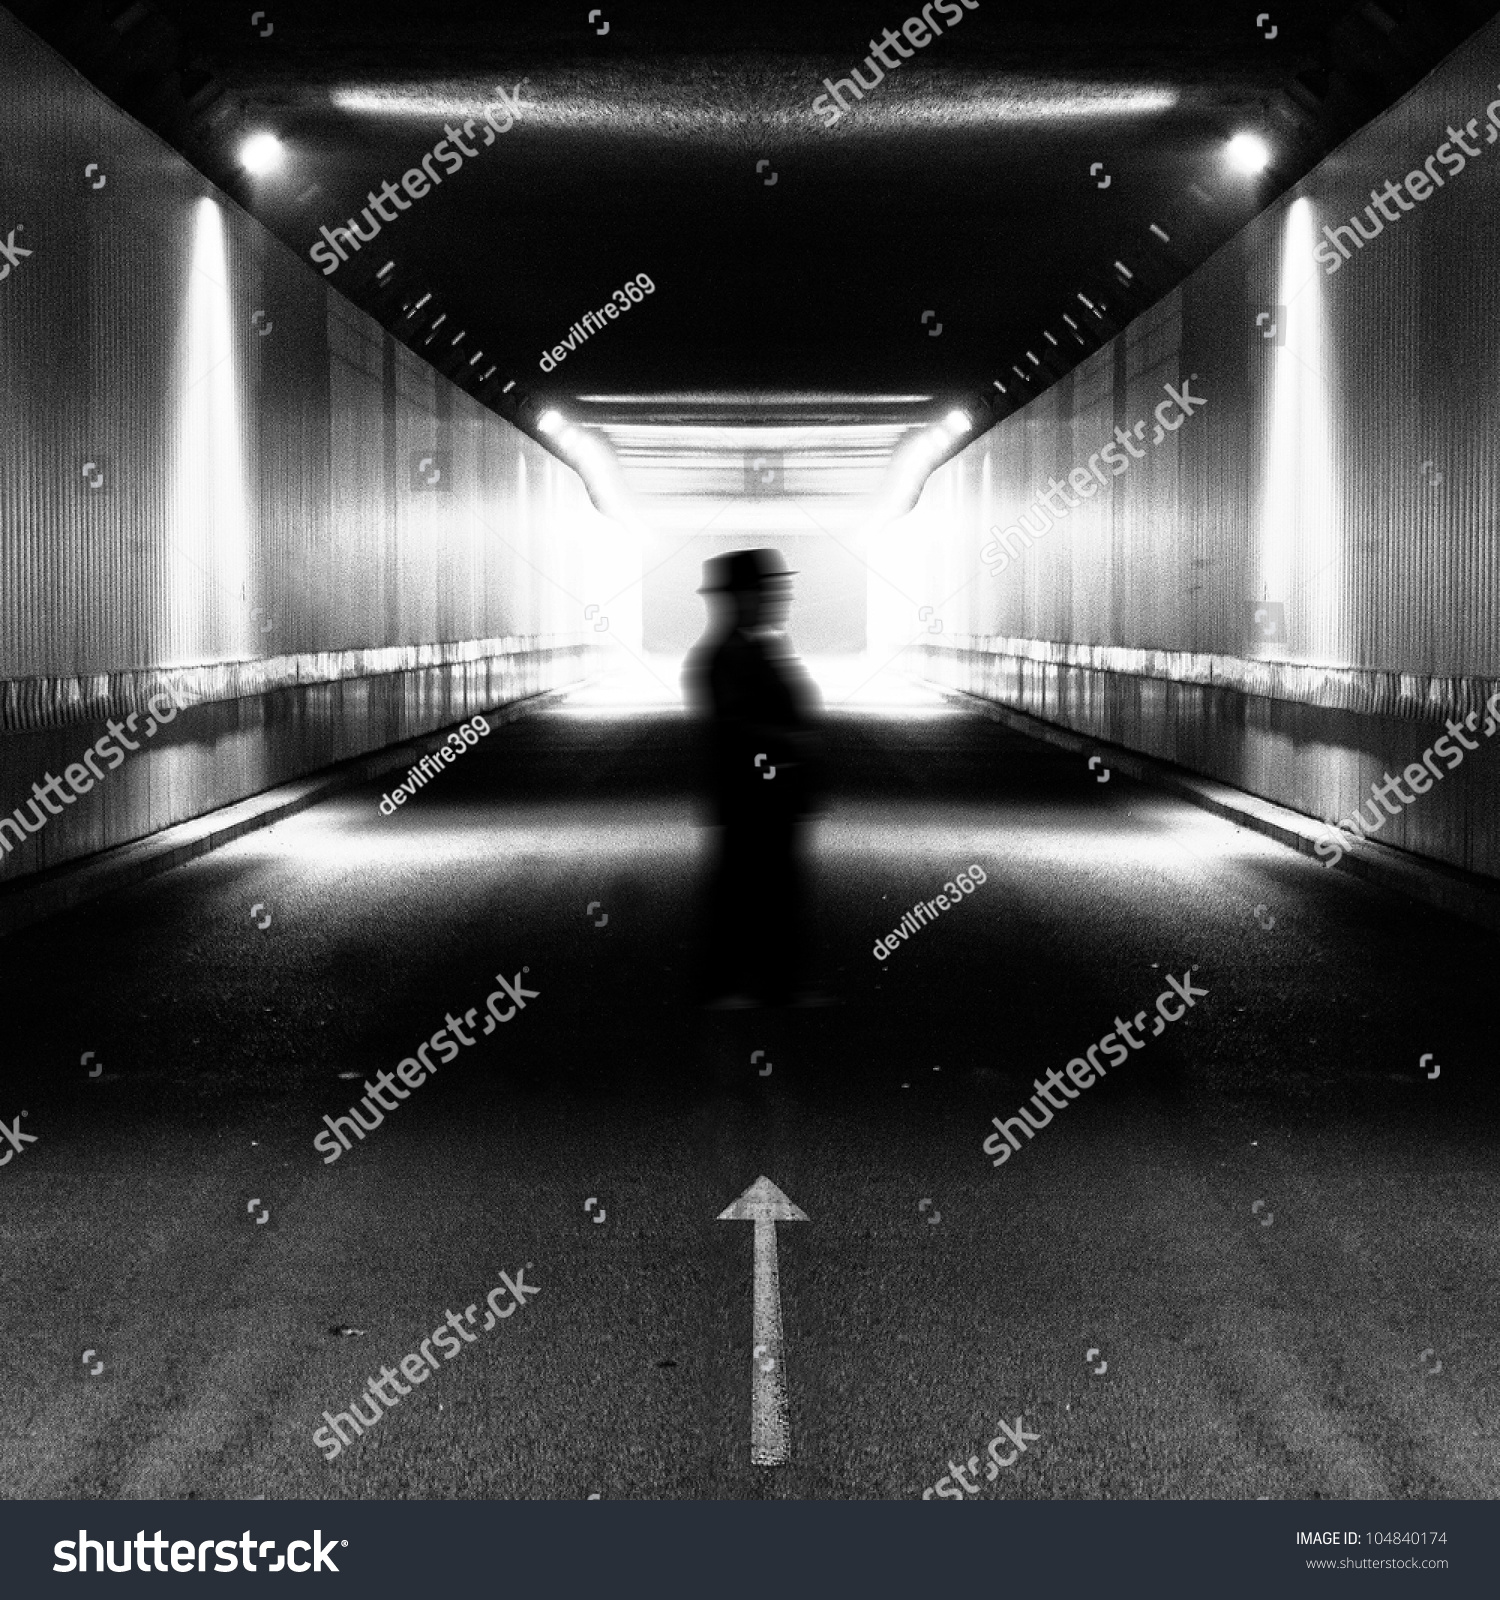 Silhouette Man Walking In Light Tunnel Stock Photo 104840174 : Shutterstock Silhouette Man Walking Tunnel